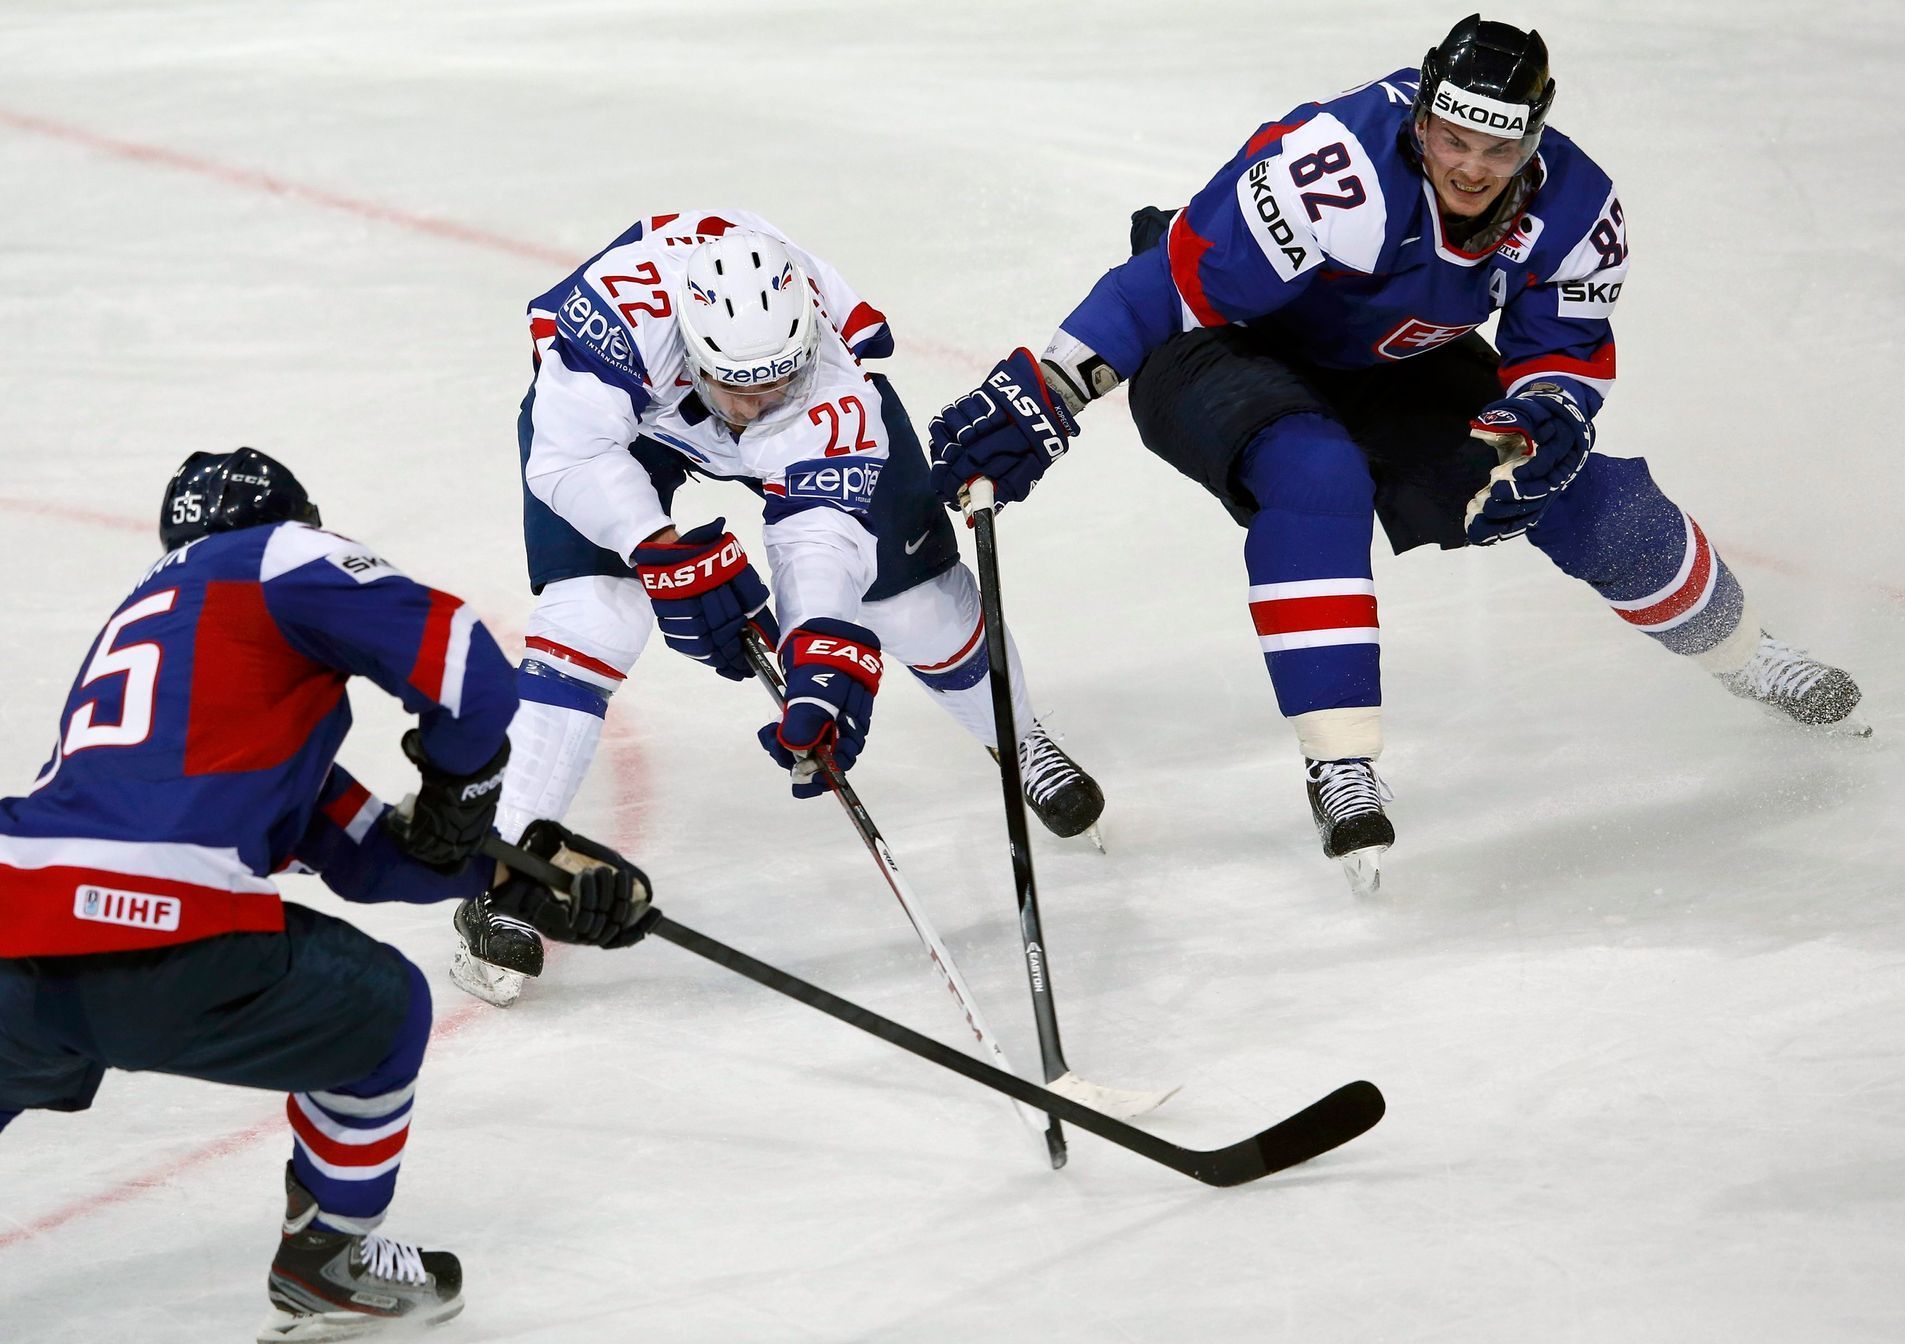 MS v hokeji 2013, Slovensko - Francie: Tomáš Kopecký (82) - Brian Henderson (22)